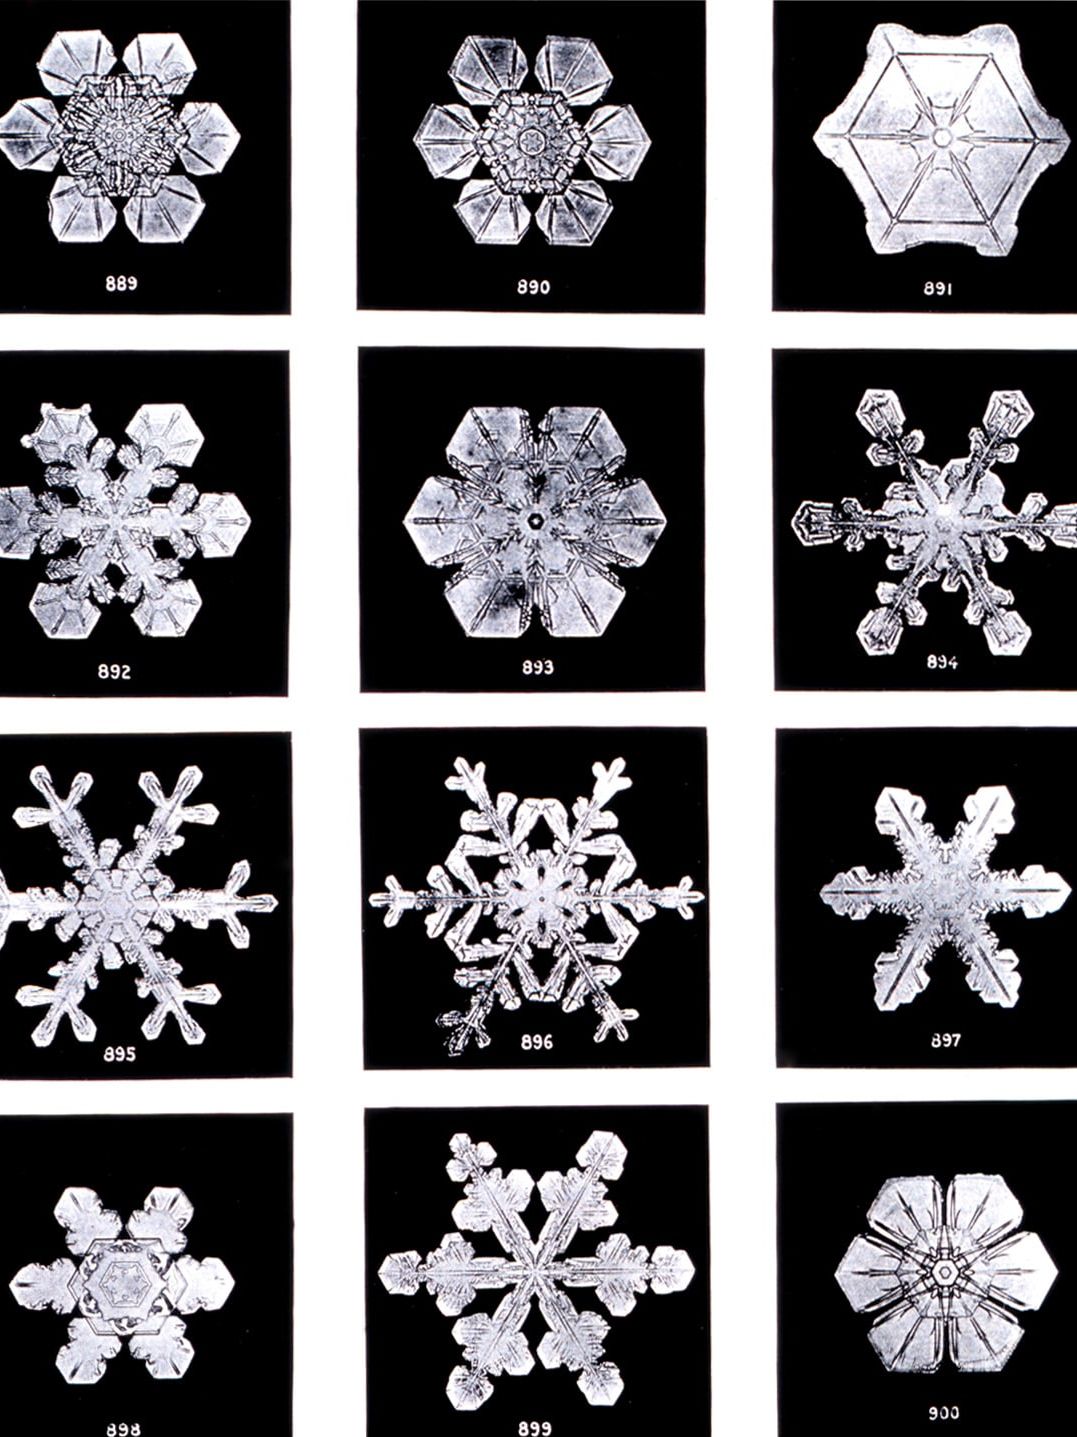 Photographie d'un flocon de neige par Wilson Bentley (1865 - 1931). Fermier américain passionné de photographie, il réalisa plus de 2000 microphotographies de flocons de neige © Carl Hammer Gallery / Wilson Bentley